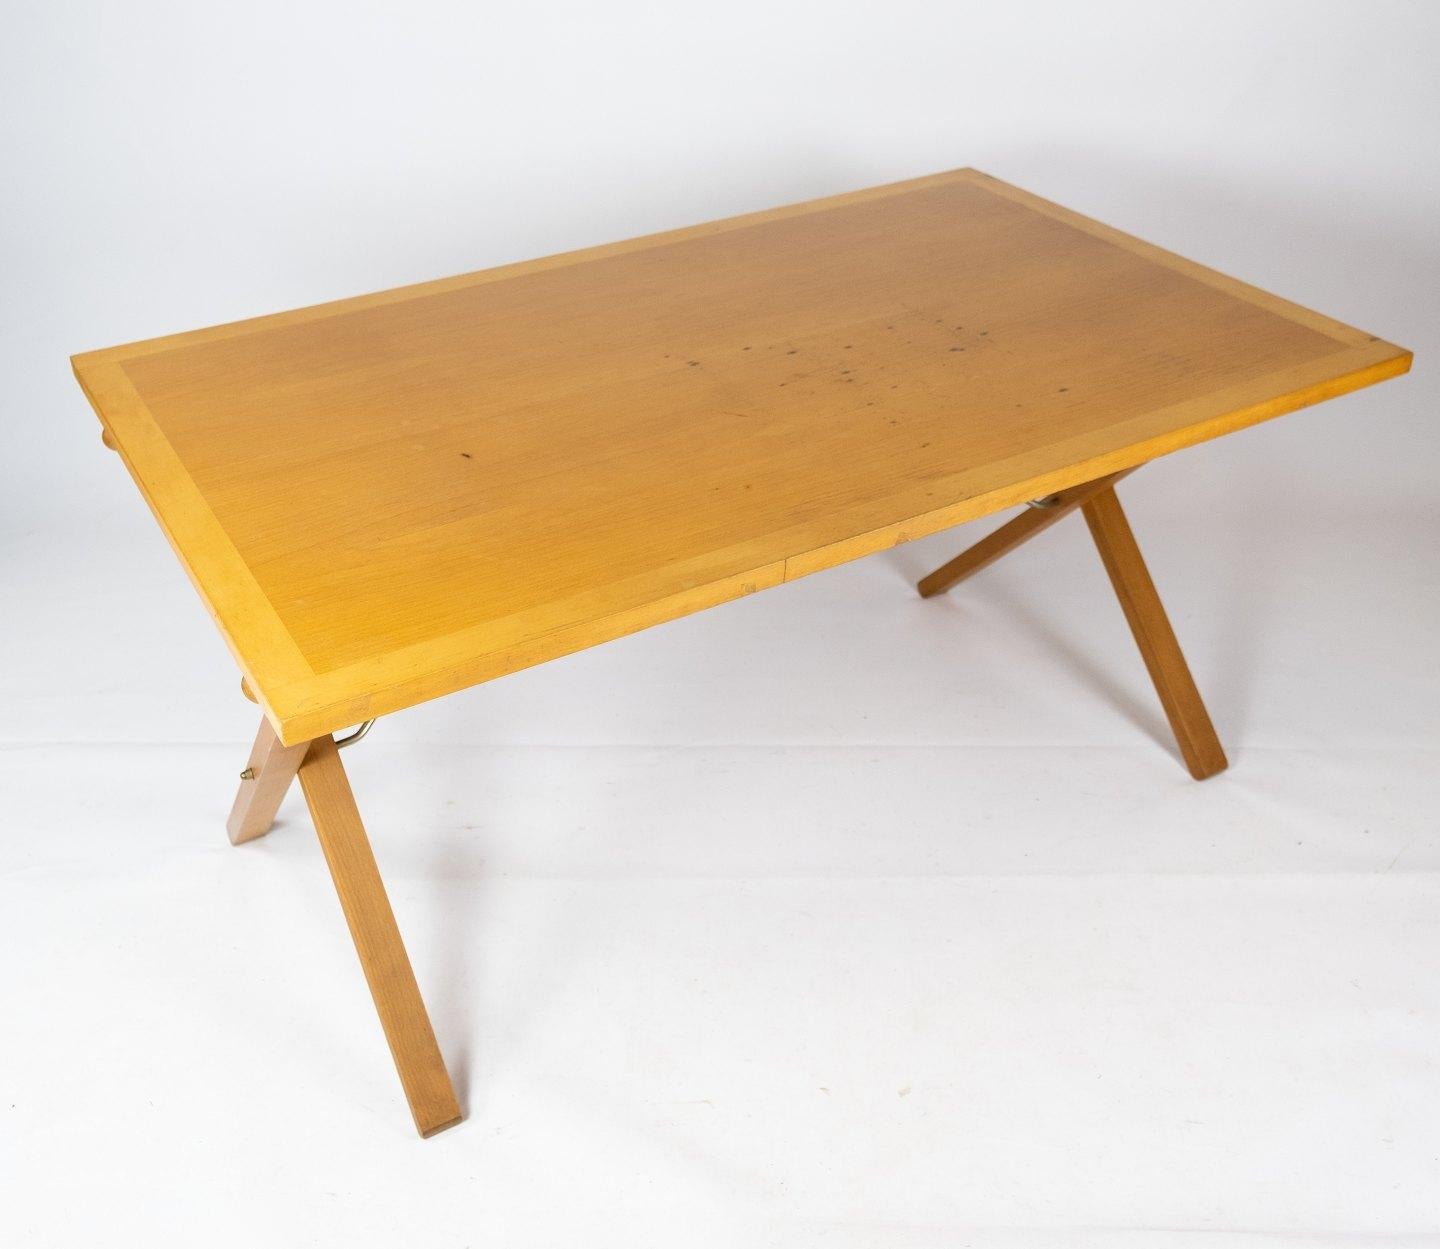 Dieser Esstisch ist ein wahres Juwel des dänischen Möbeldesigns und trägt eindeutig die Handschrift von Paul Cadovius' einzigartiger Vision und seinem Talent. Dieser Tisch wurde in den 1960er Jahren von der renommierten Firma Cado hergestellt und